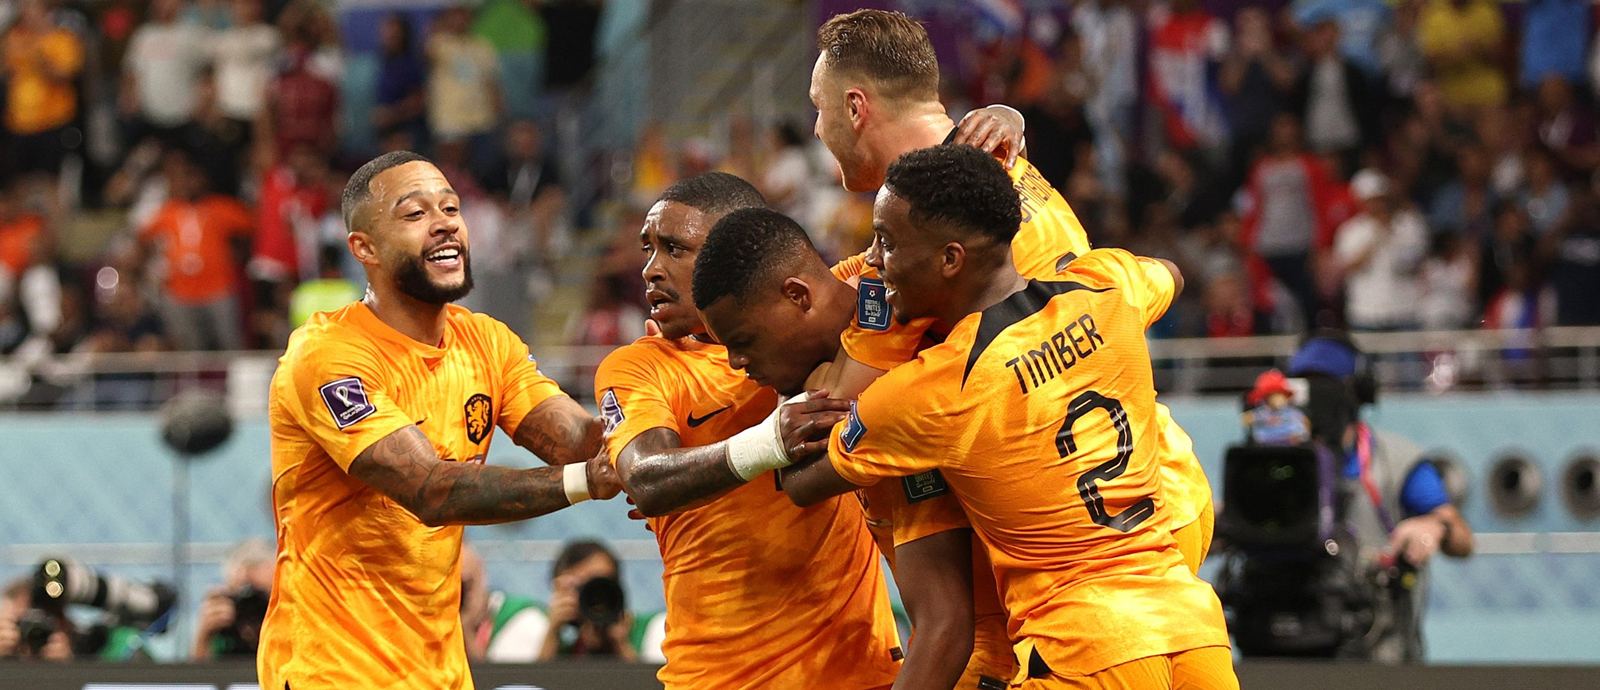 Netherlands claim first quarter-final spot